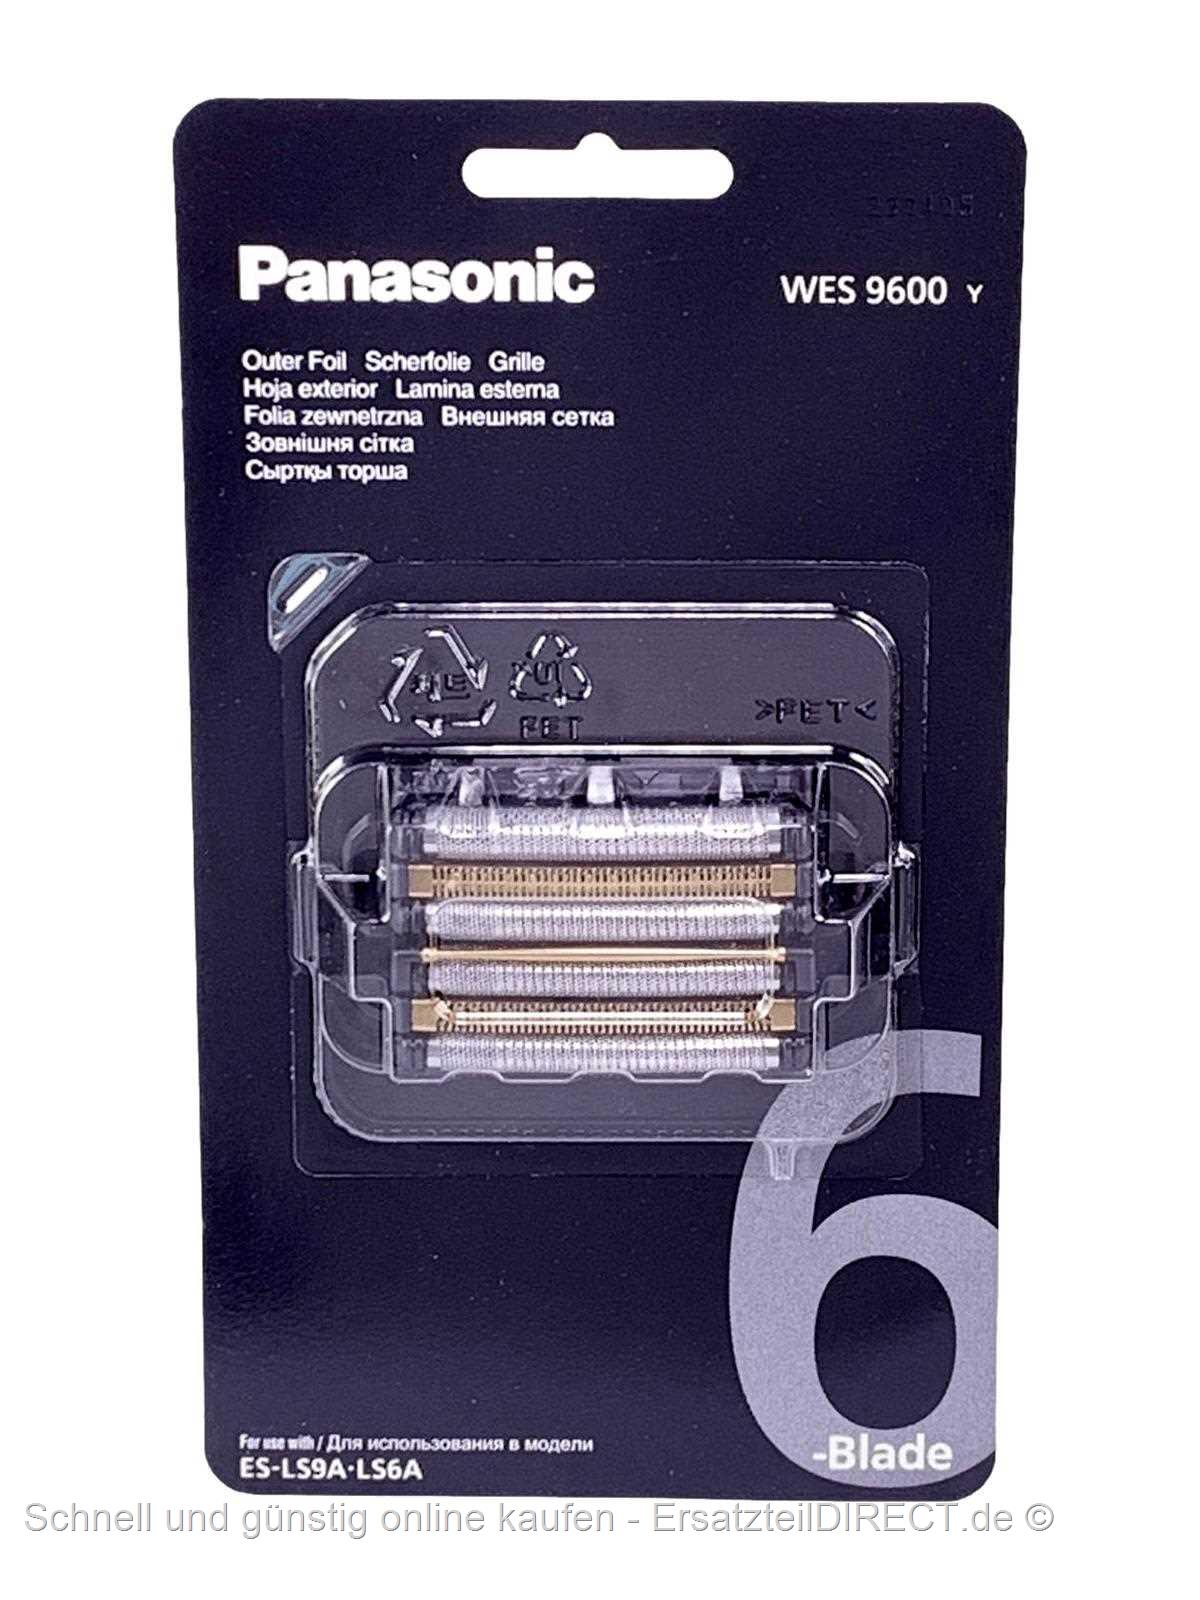 Scherfolie bei WES9600 +Klingen WES9600Y Kombipack Panasonic günstig kaufen